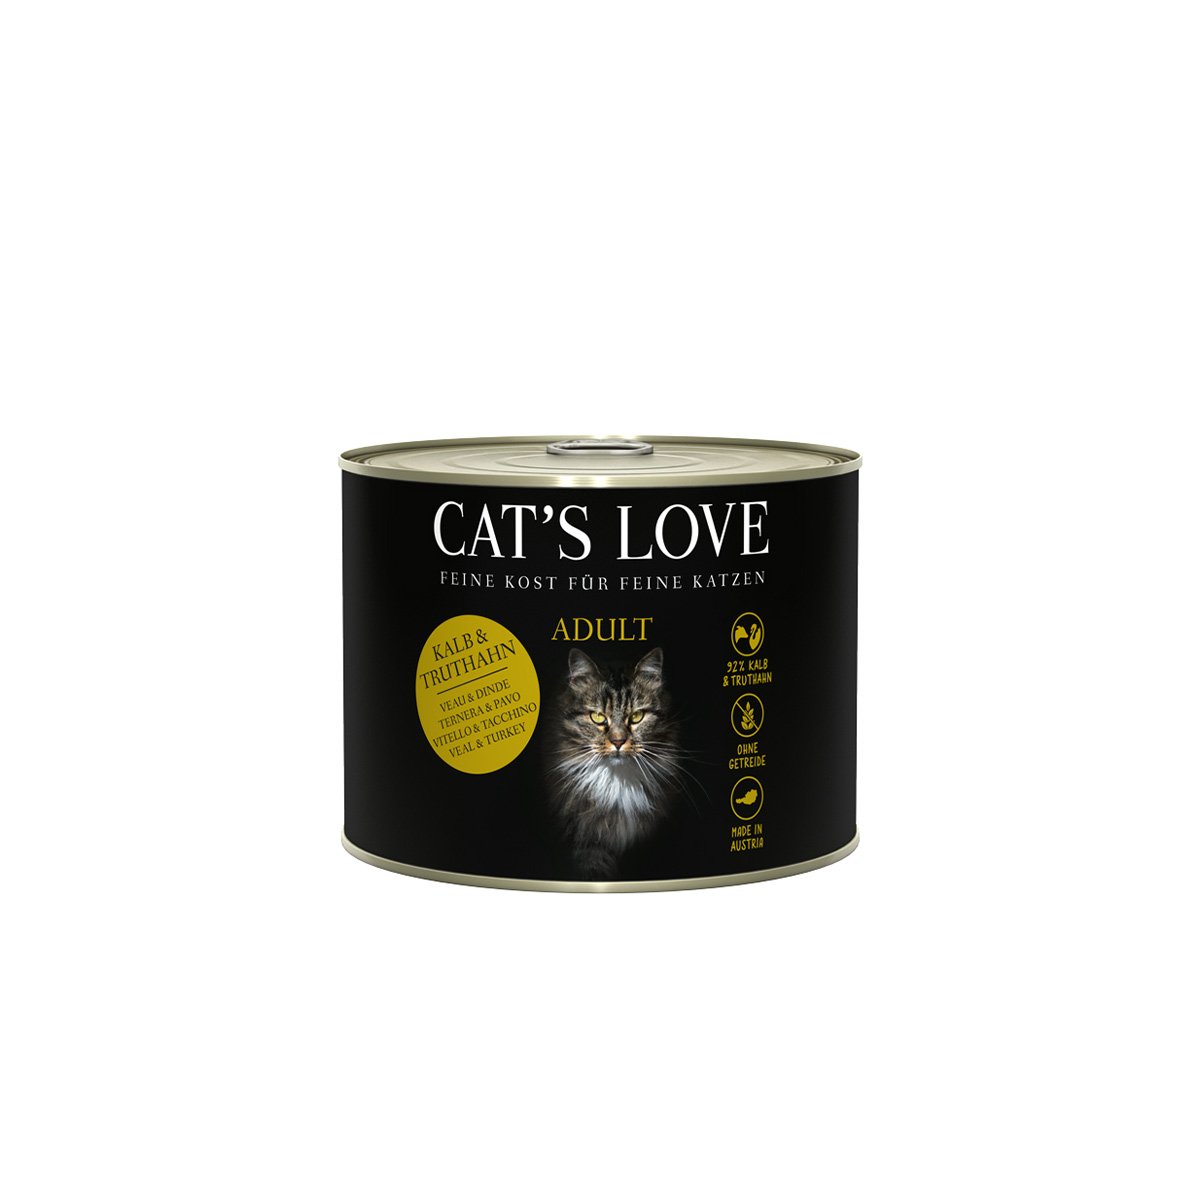 Levně Cat's Love konzervy telecí a krůtí maso se šantou kočičí a lněným olejem 6× 200 g